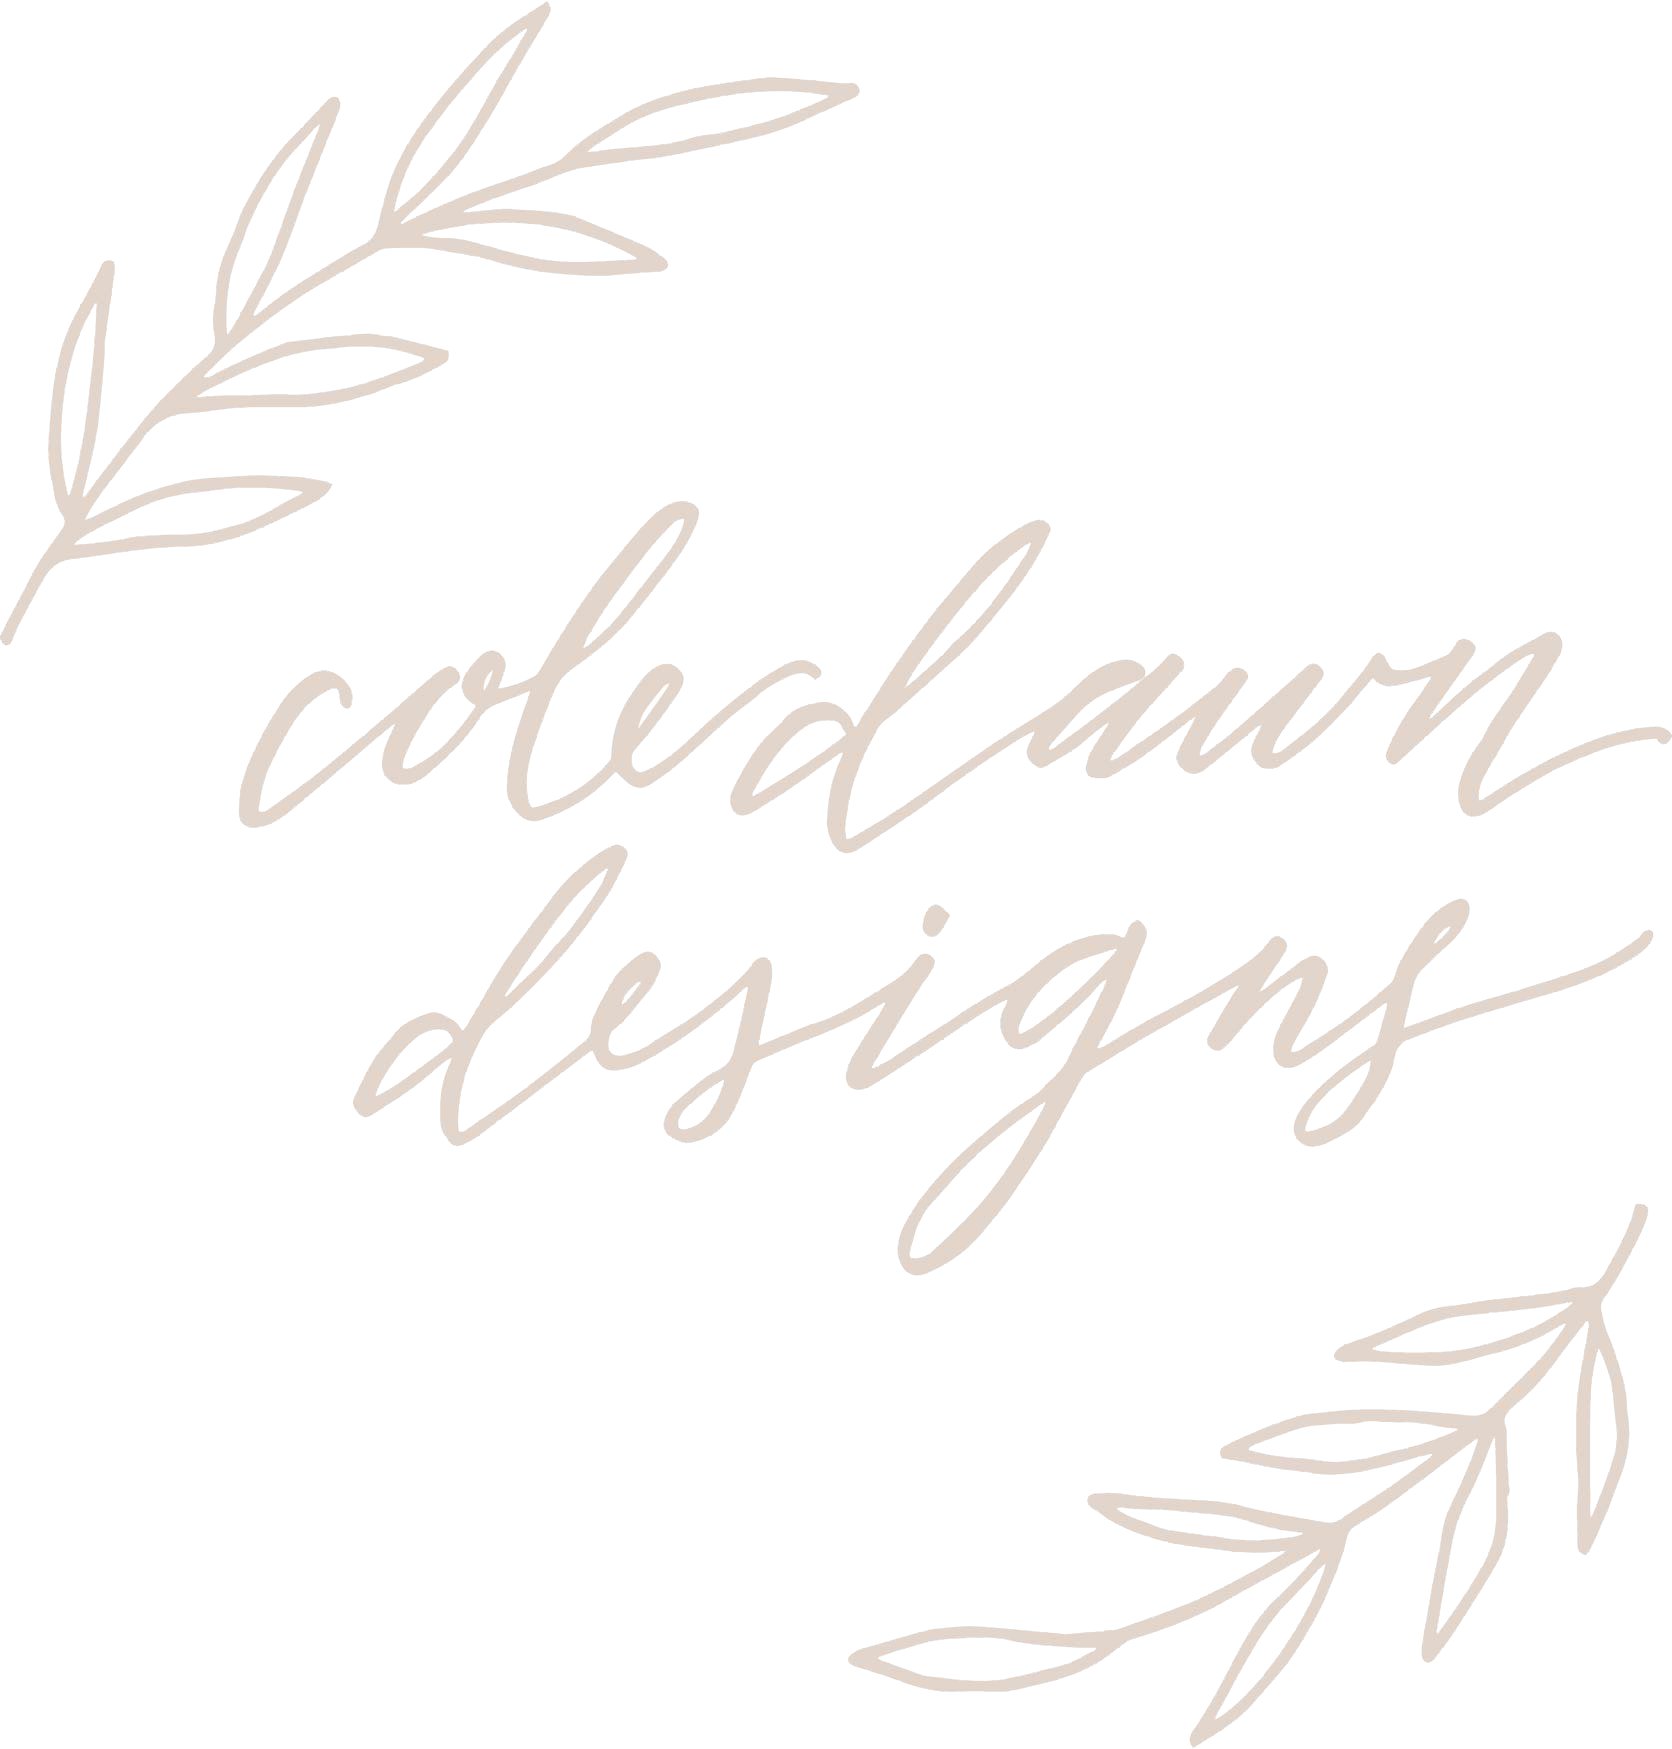 Cole Dawn Designs